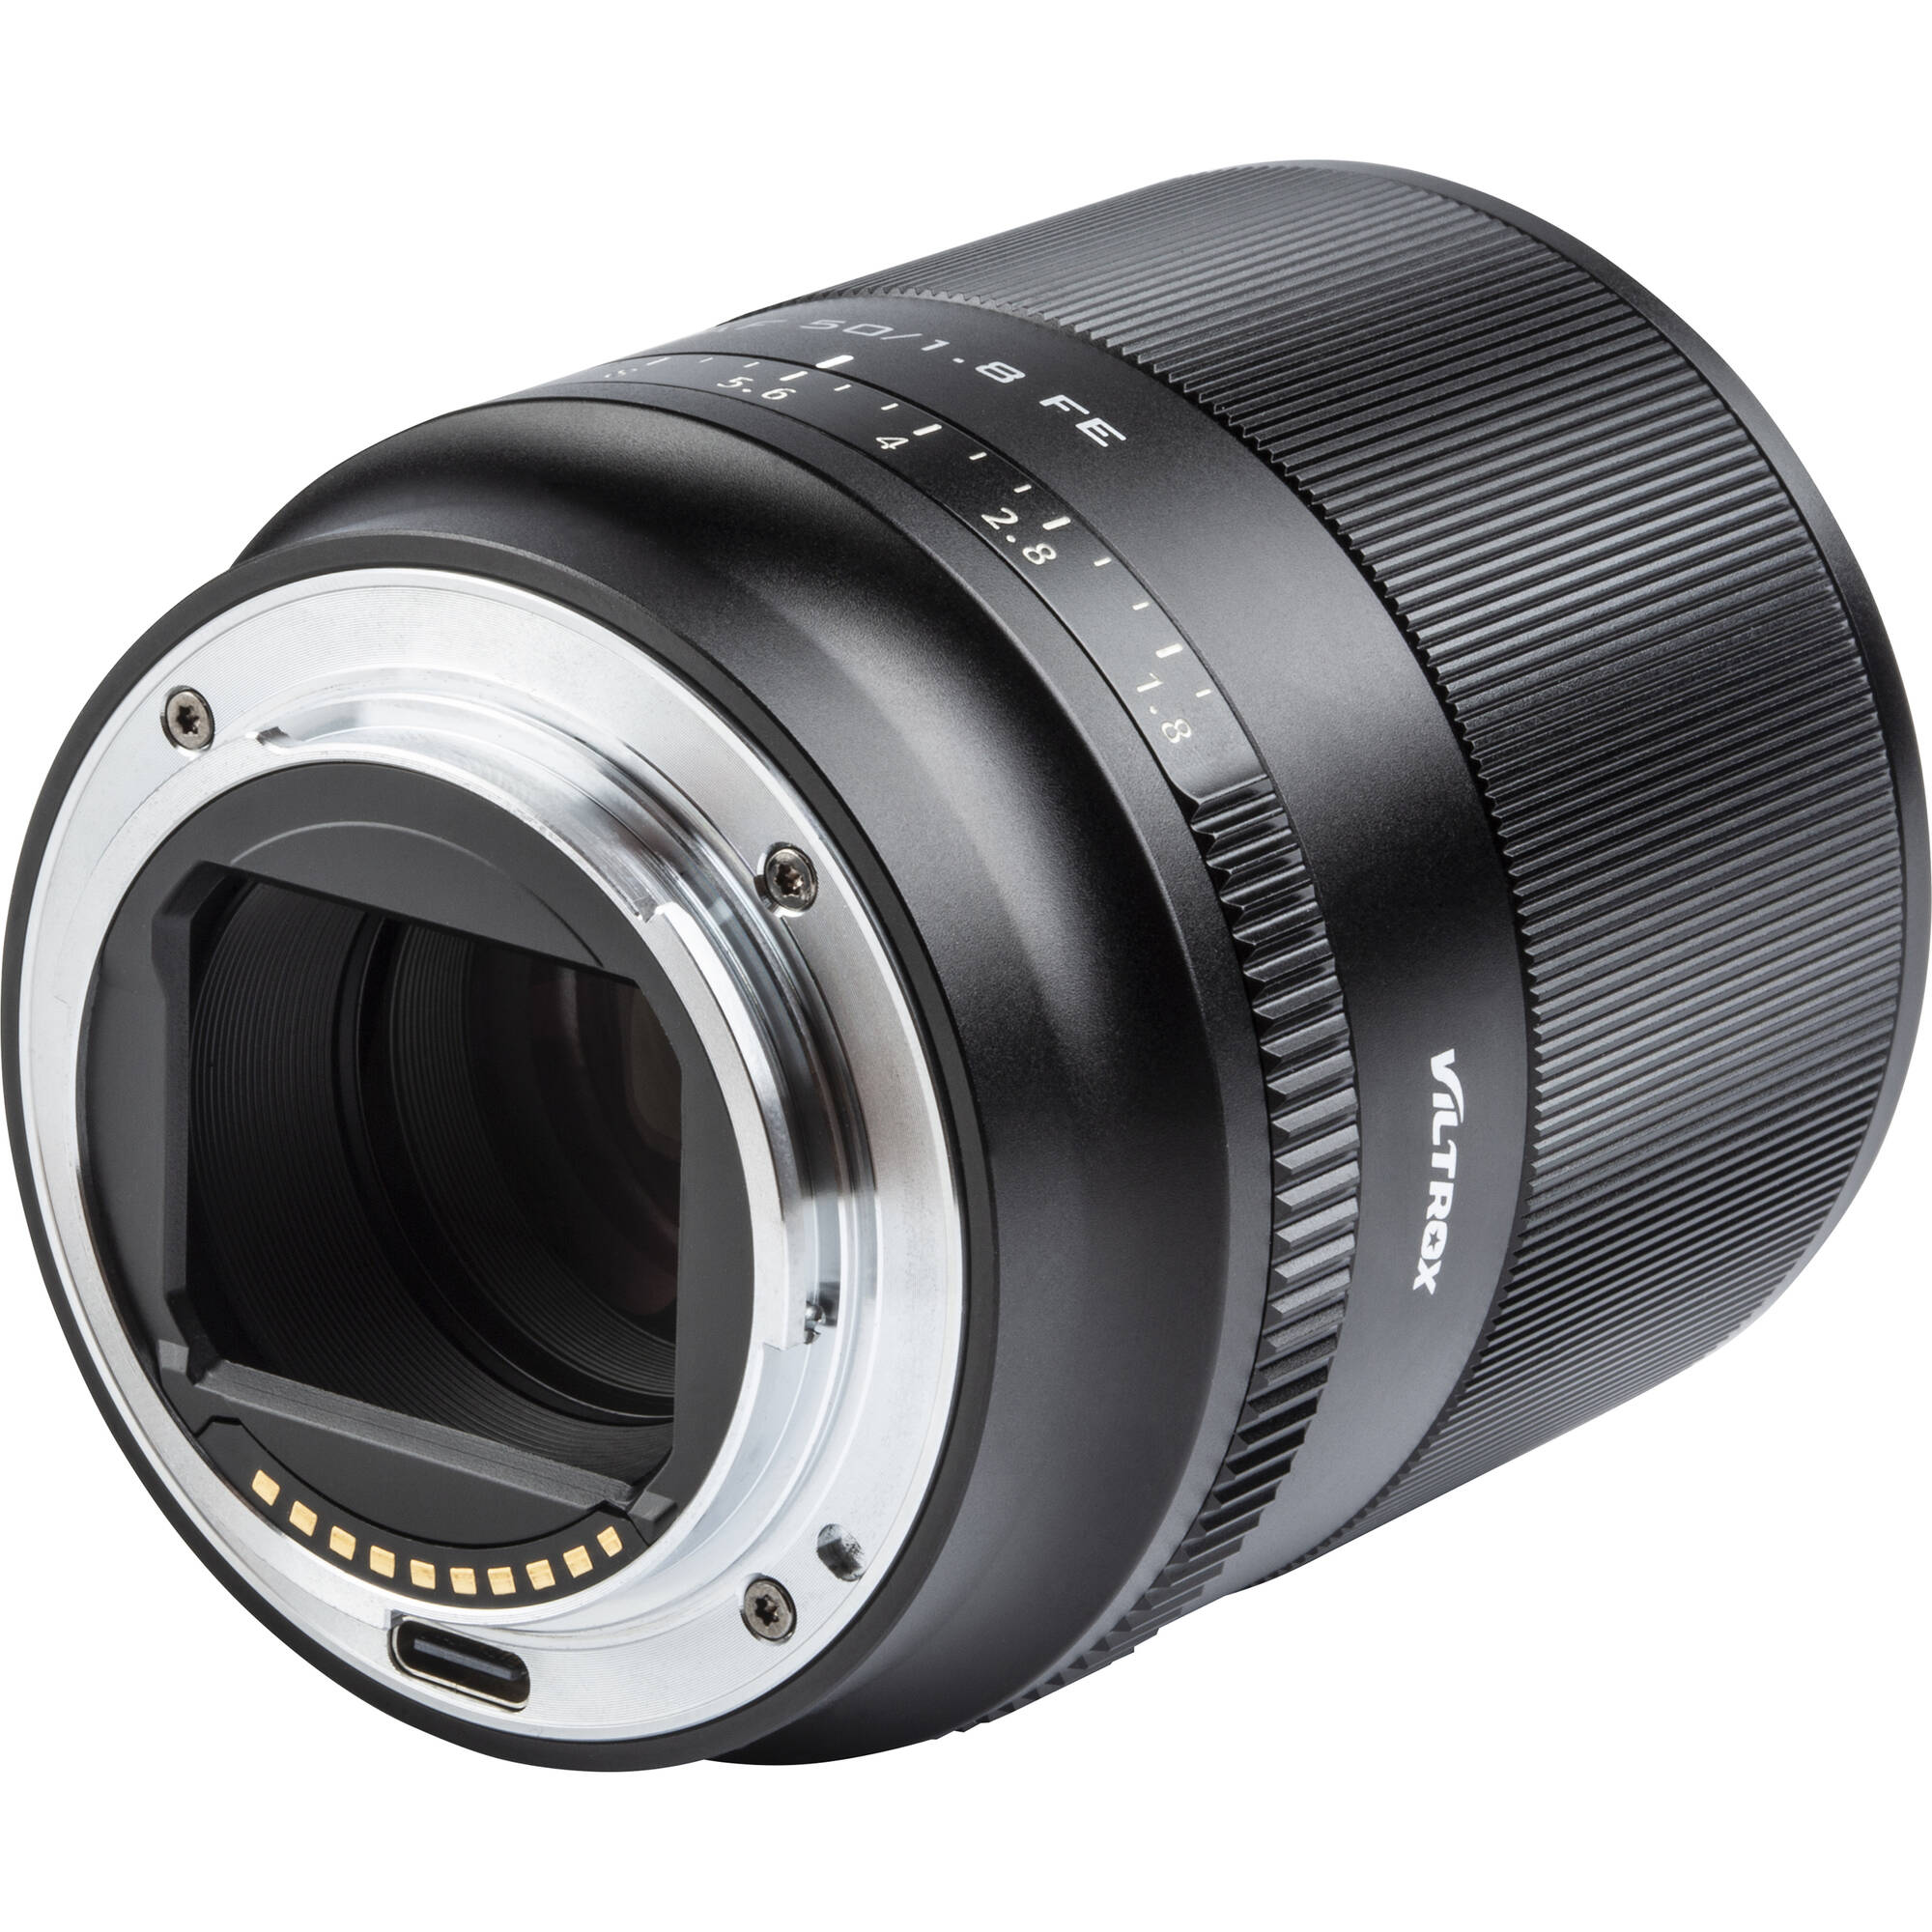 Viltrox AF 50mm f/1.8 FE Lens for Sony E